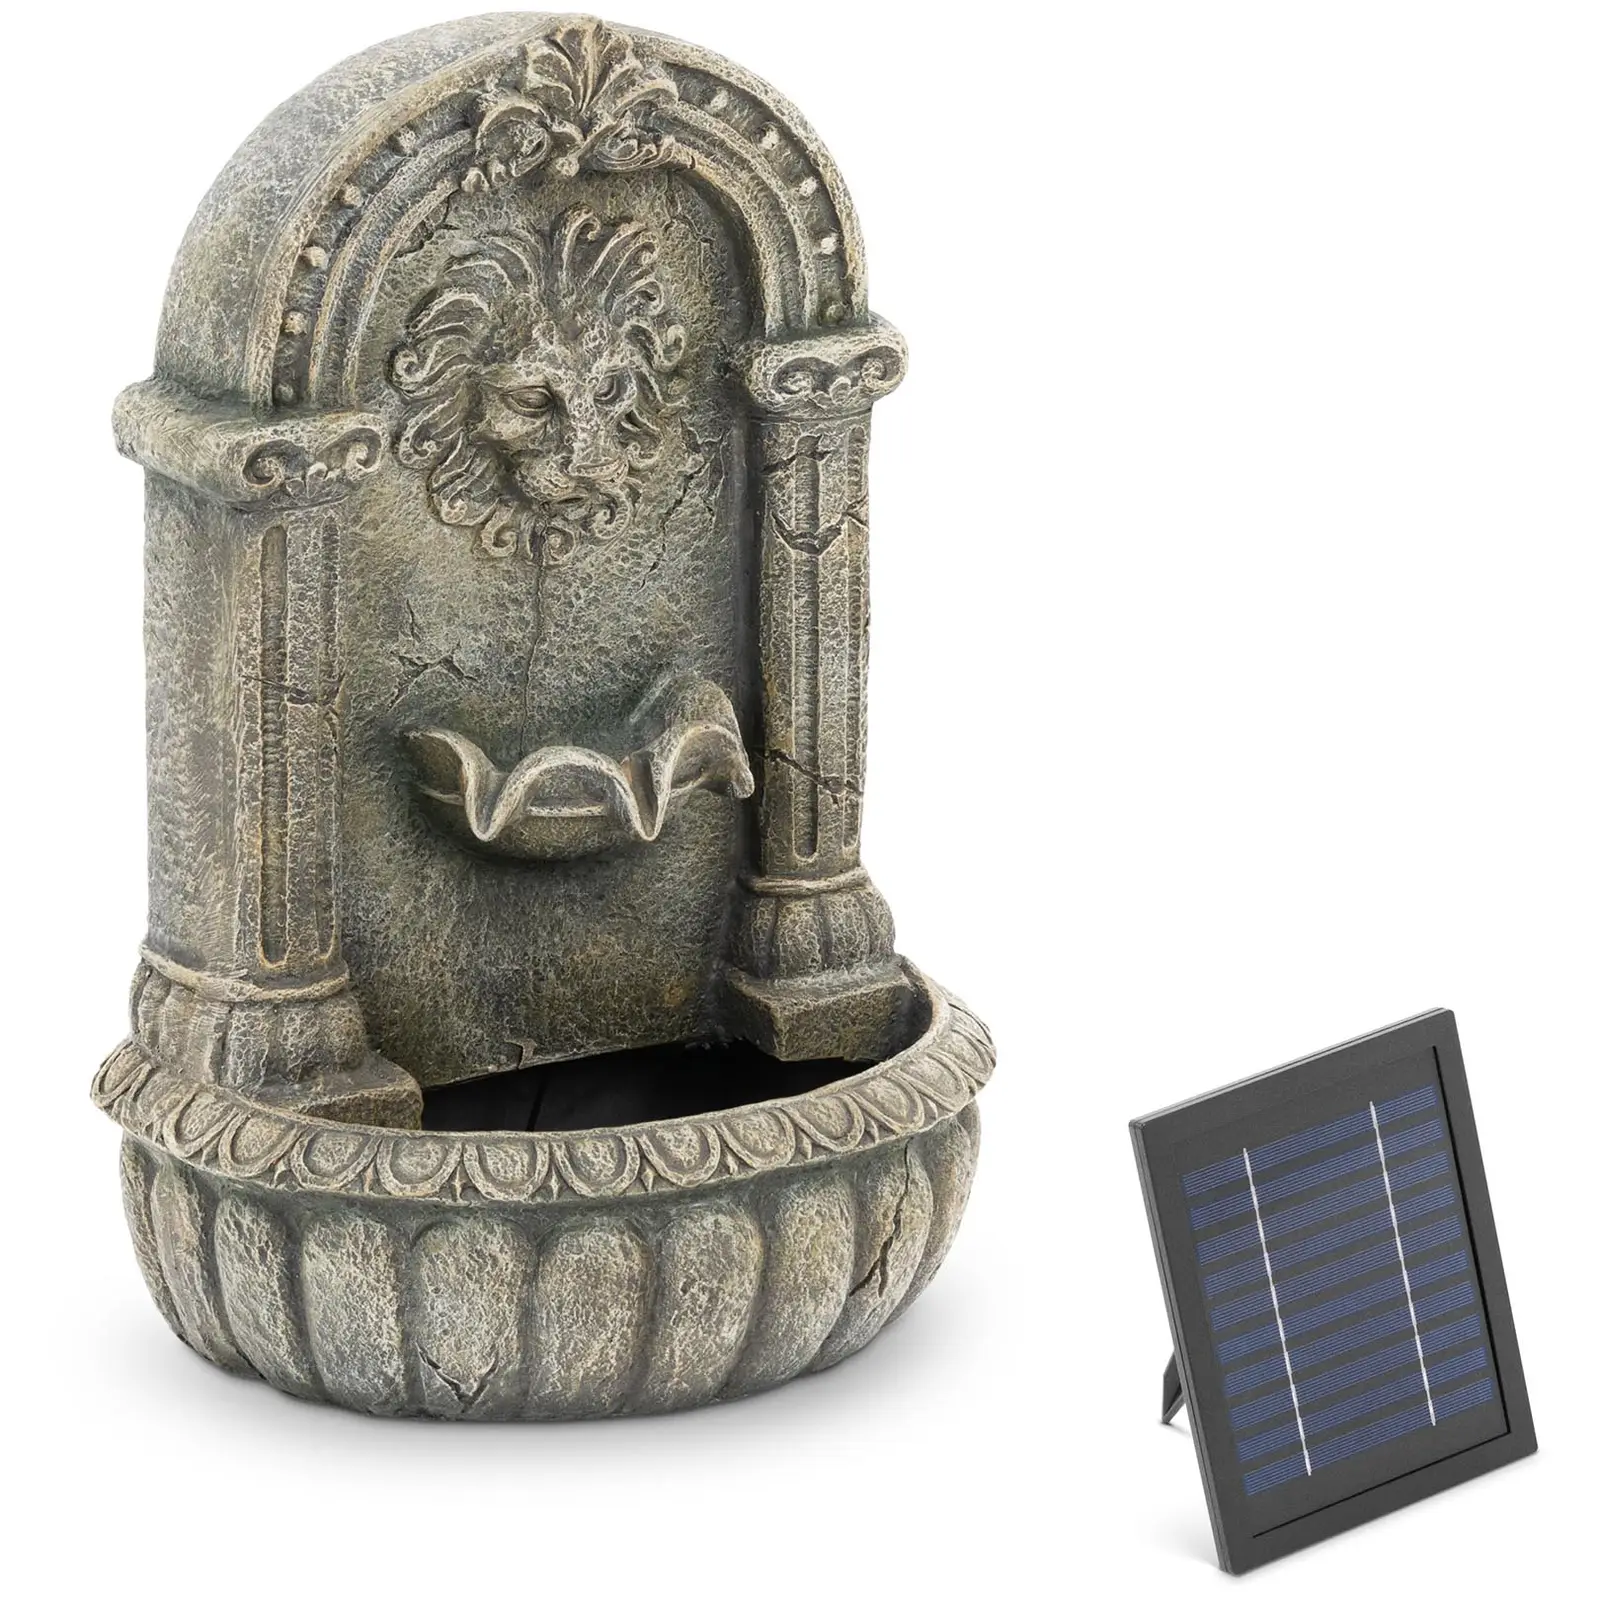 Solar Garden Fountain - Lejonhuvudet sprutar på utsmyckad bassäng - LED-belysning